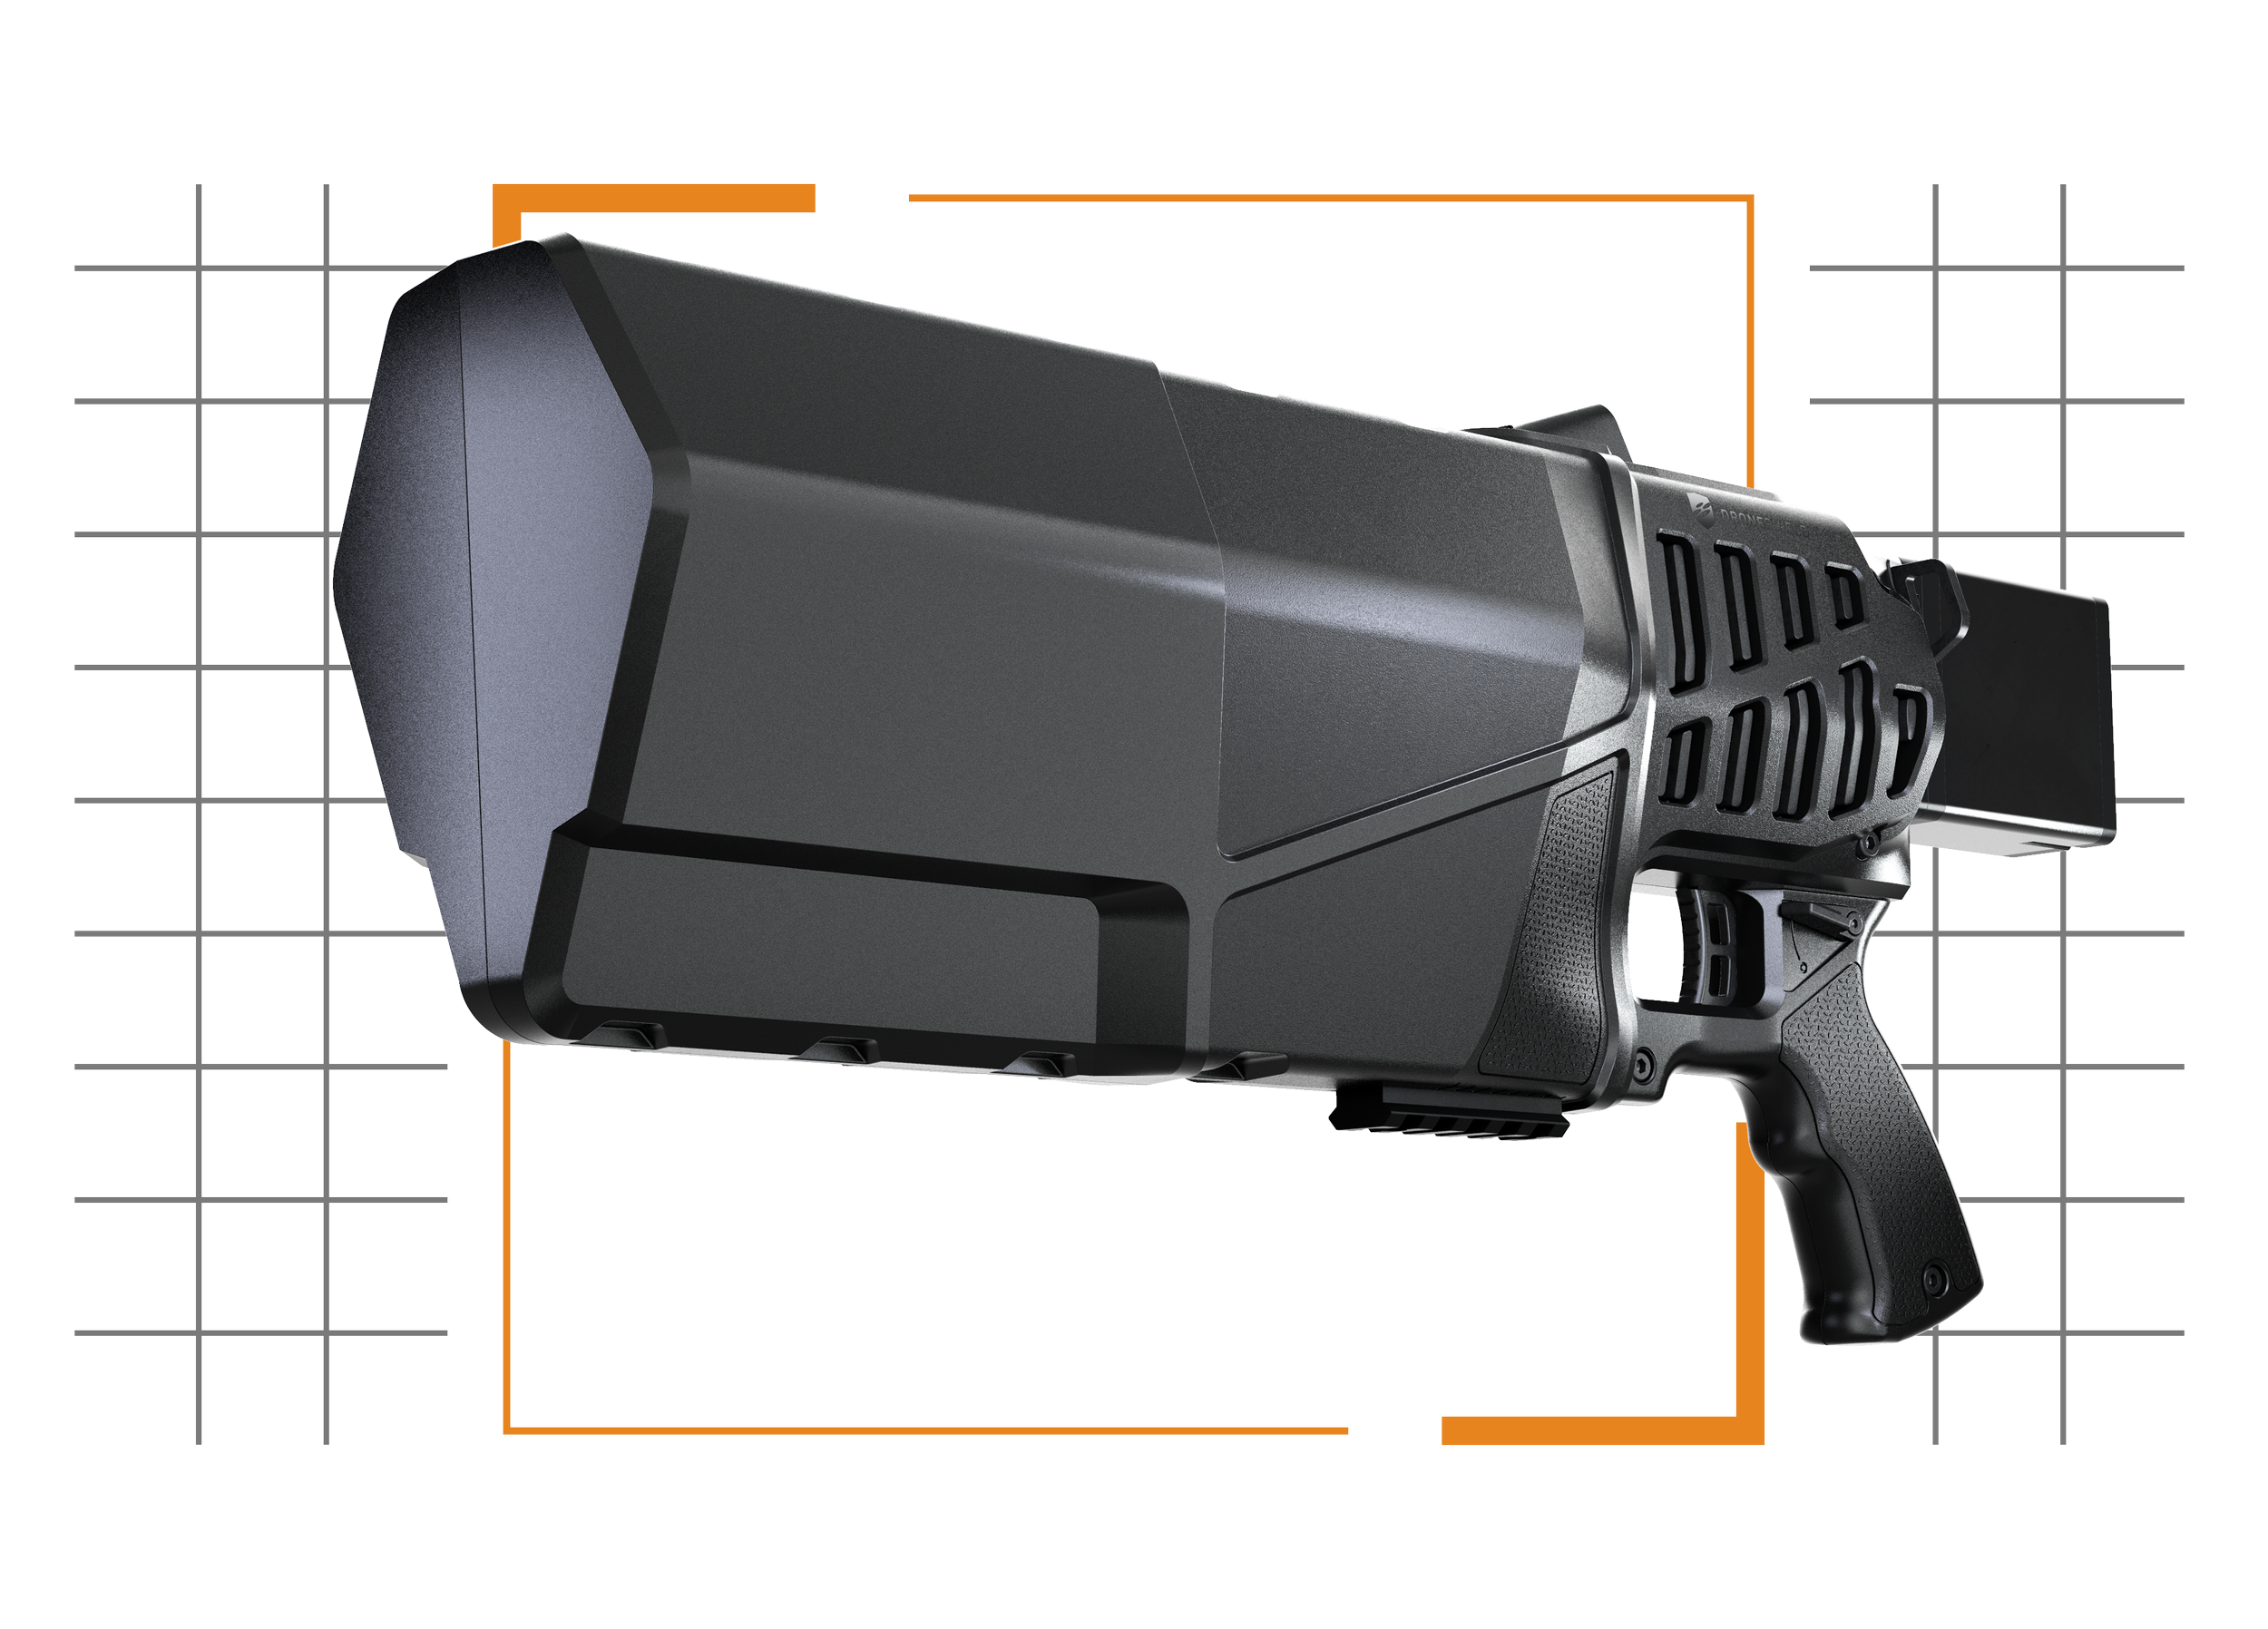 A futuristic gray blaster gun